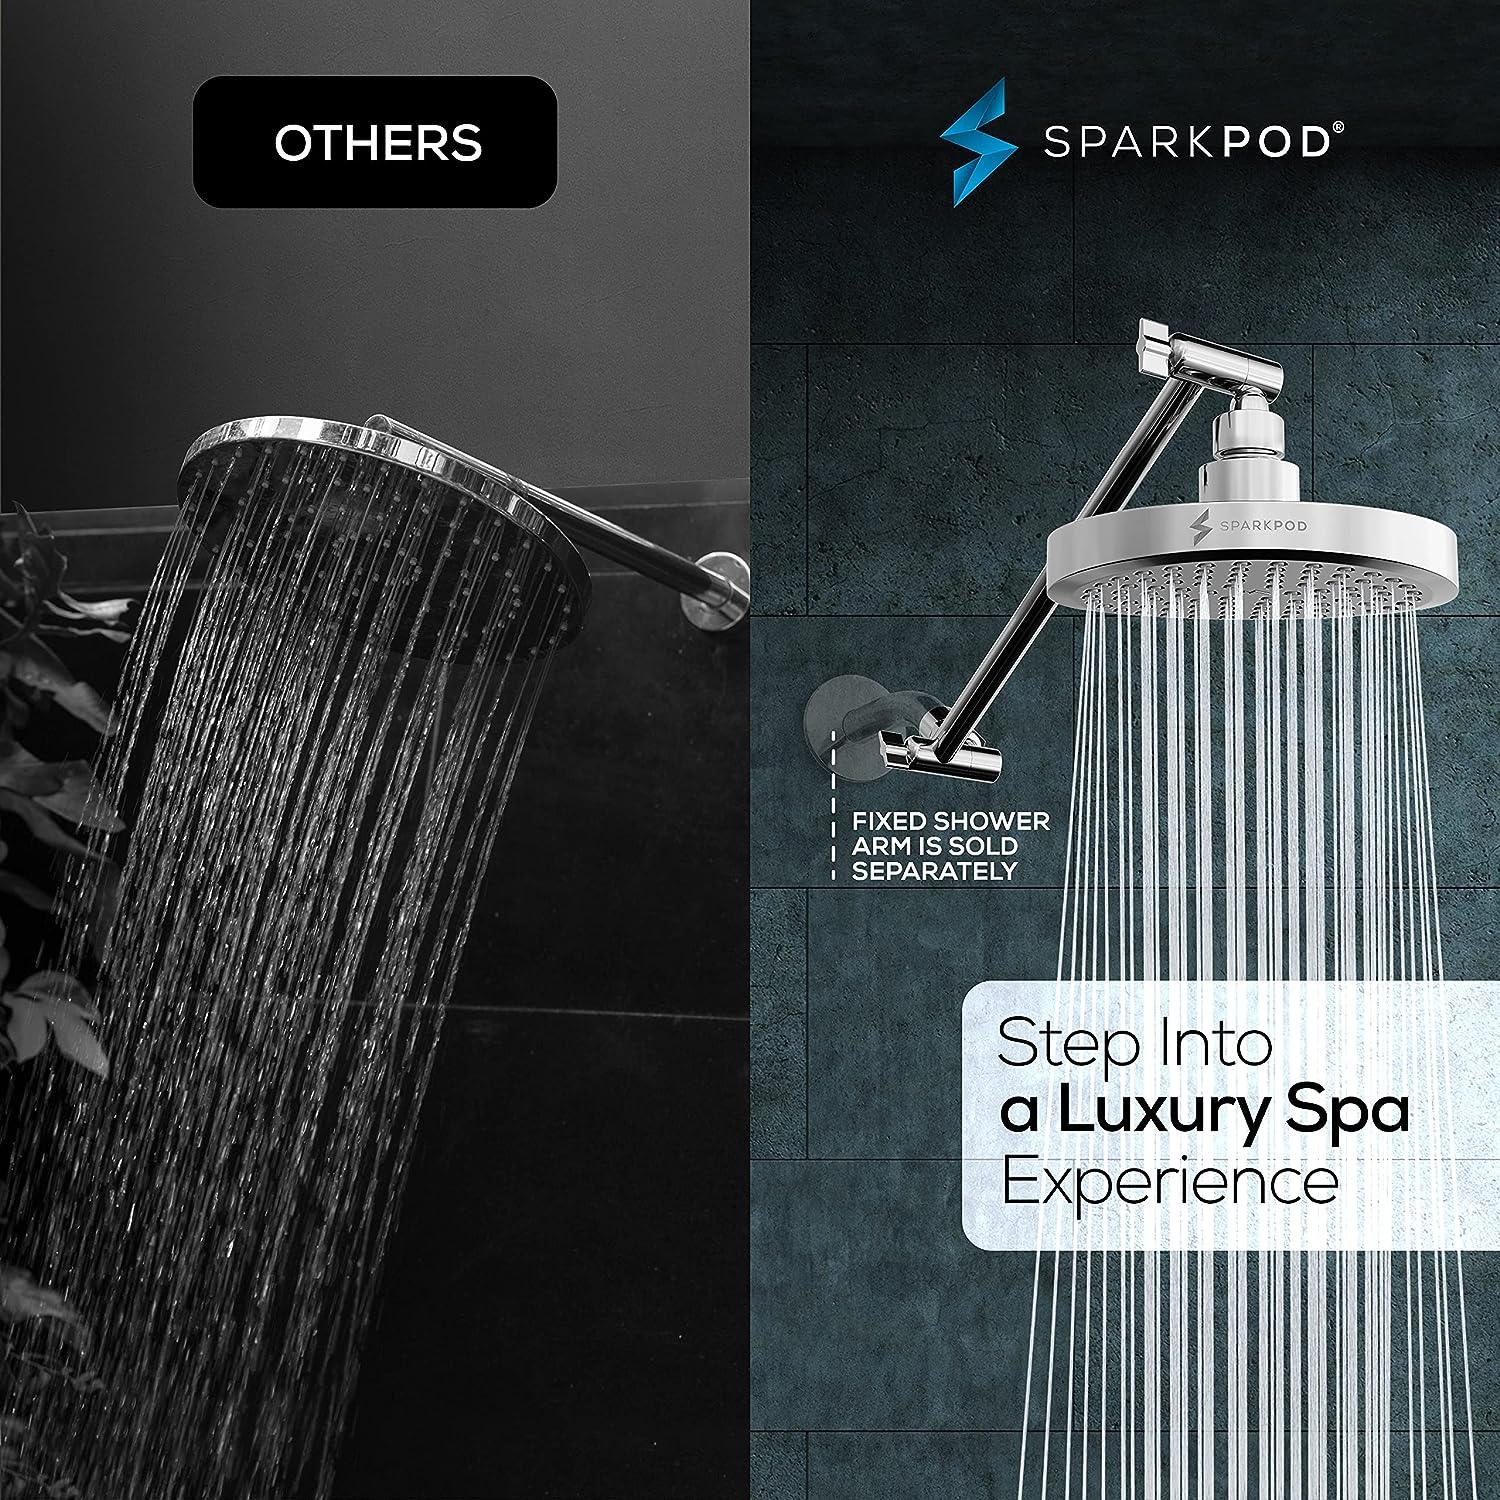  SparkPod Cabezal de ducha, lluvia de alta presión, diseño de  lujo de alta calidad, instalación en 1 minuto, reemplazo ajustable fácil de  limpiar para los cabezales de ducha de tu baño (